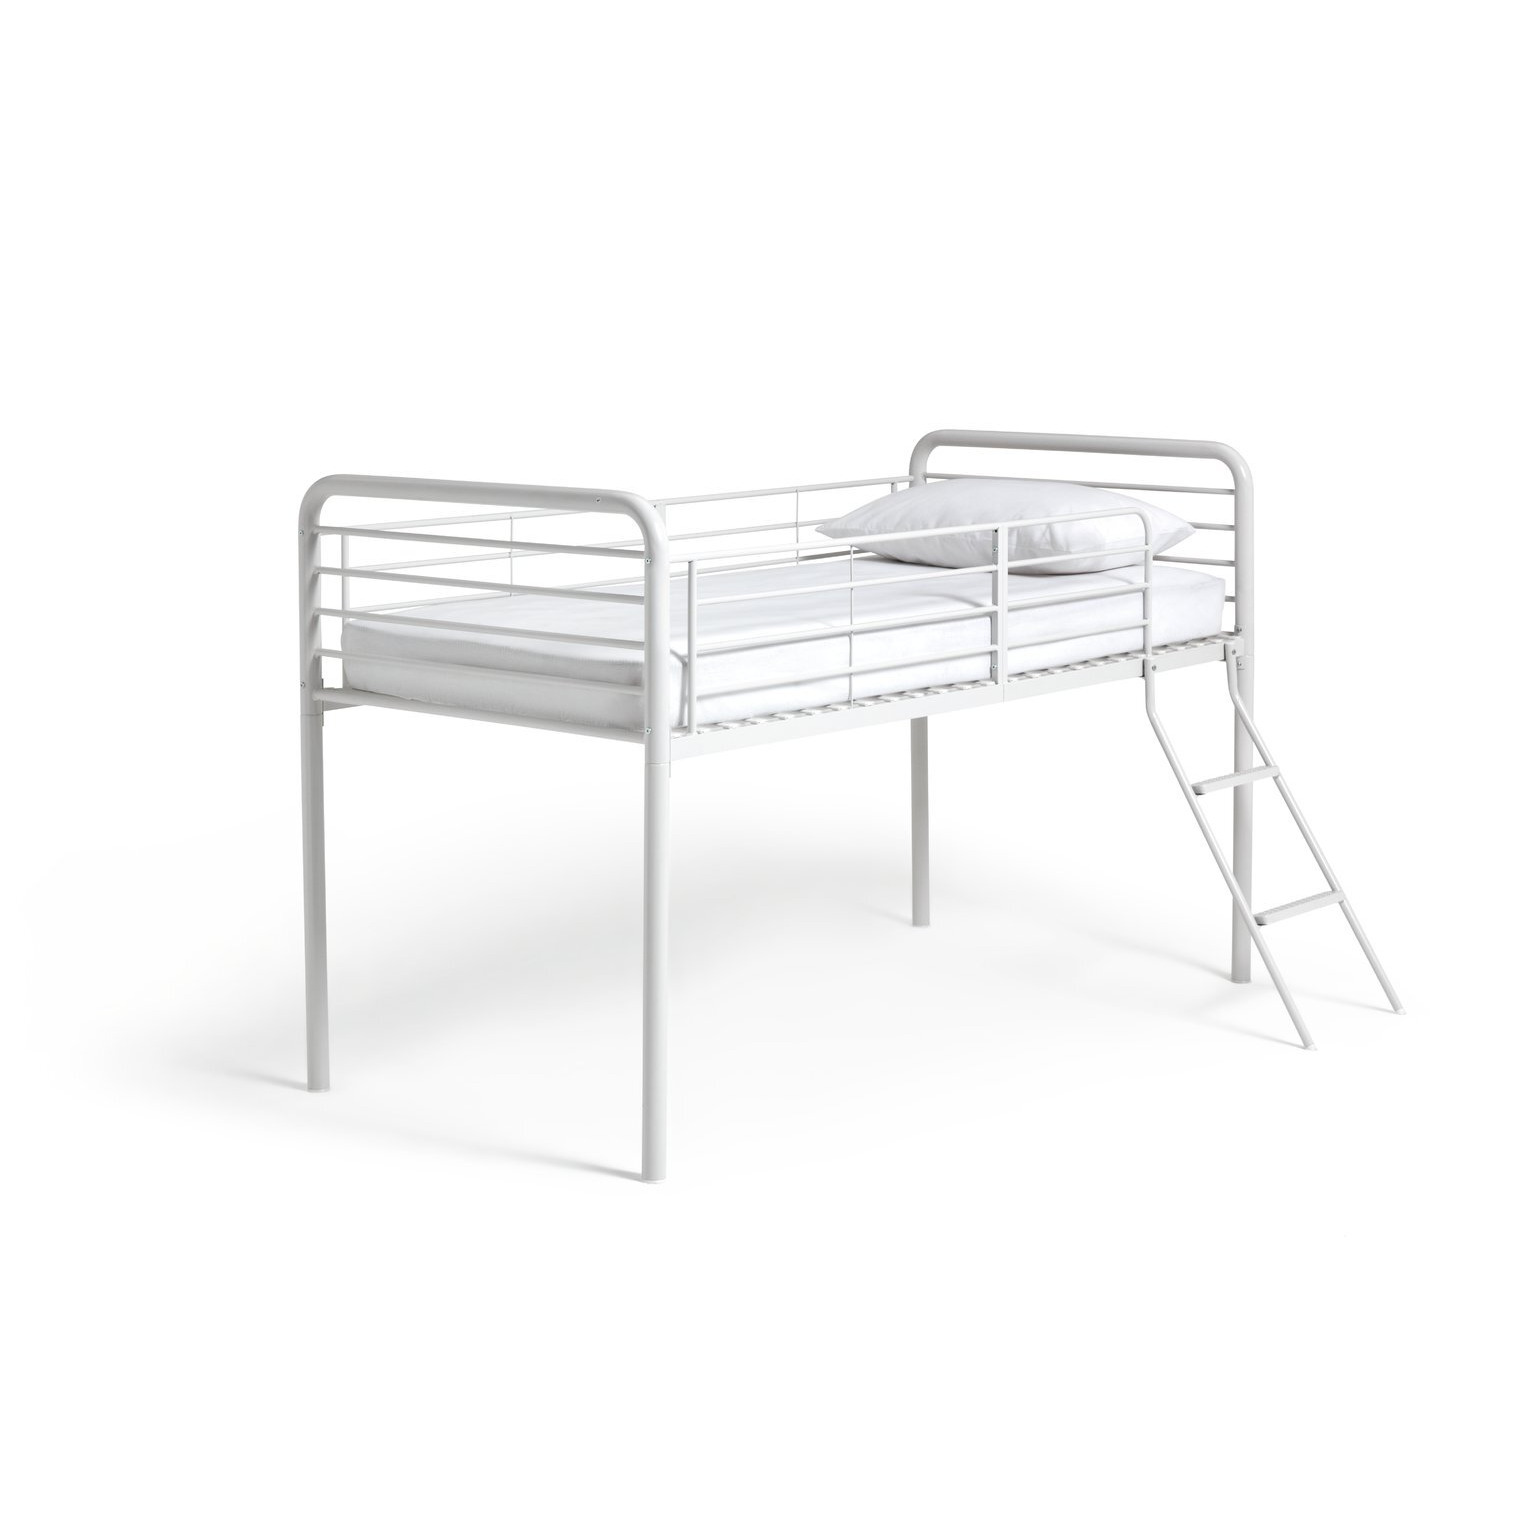 Argos Home Jo Mid Sleeper Bed Frame - White - image 1